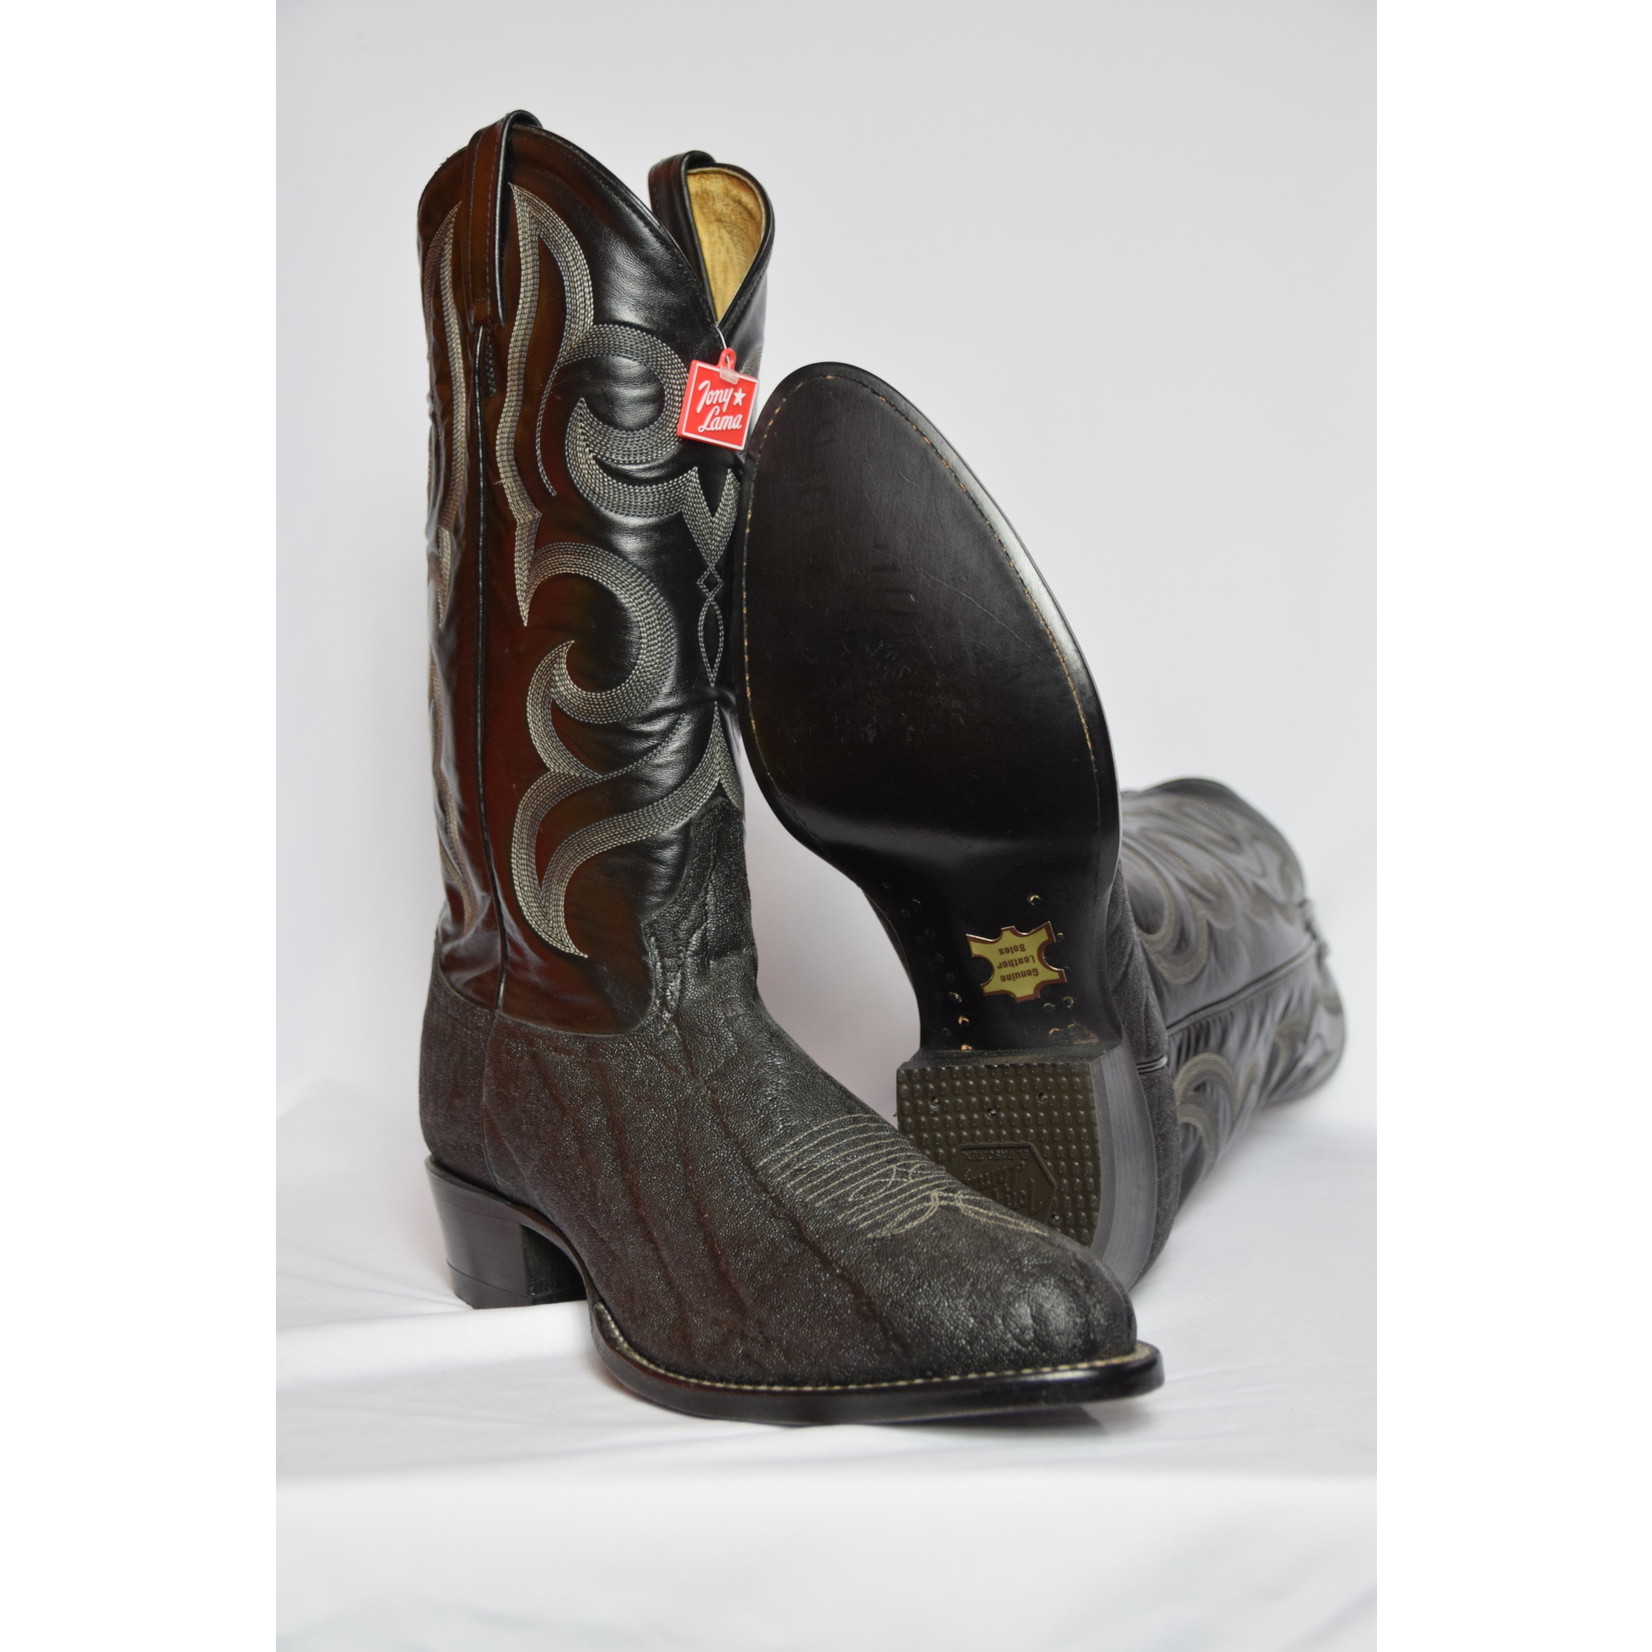 Tony Lama Tony Lama Men’s Exotic Cowboy Boot 3220 2E